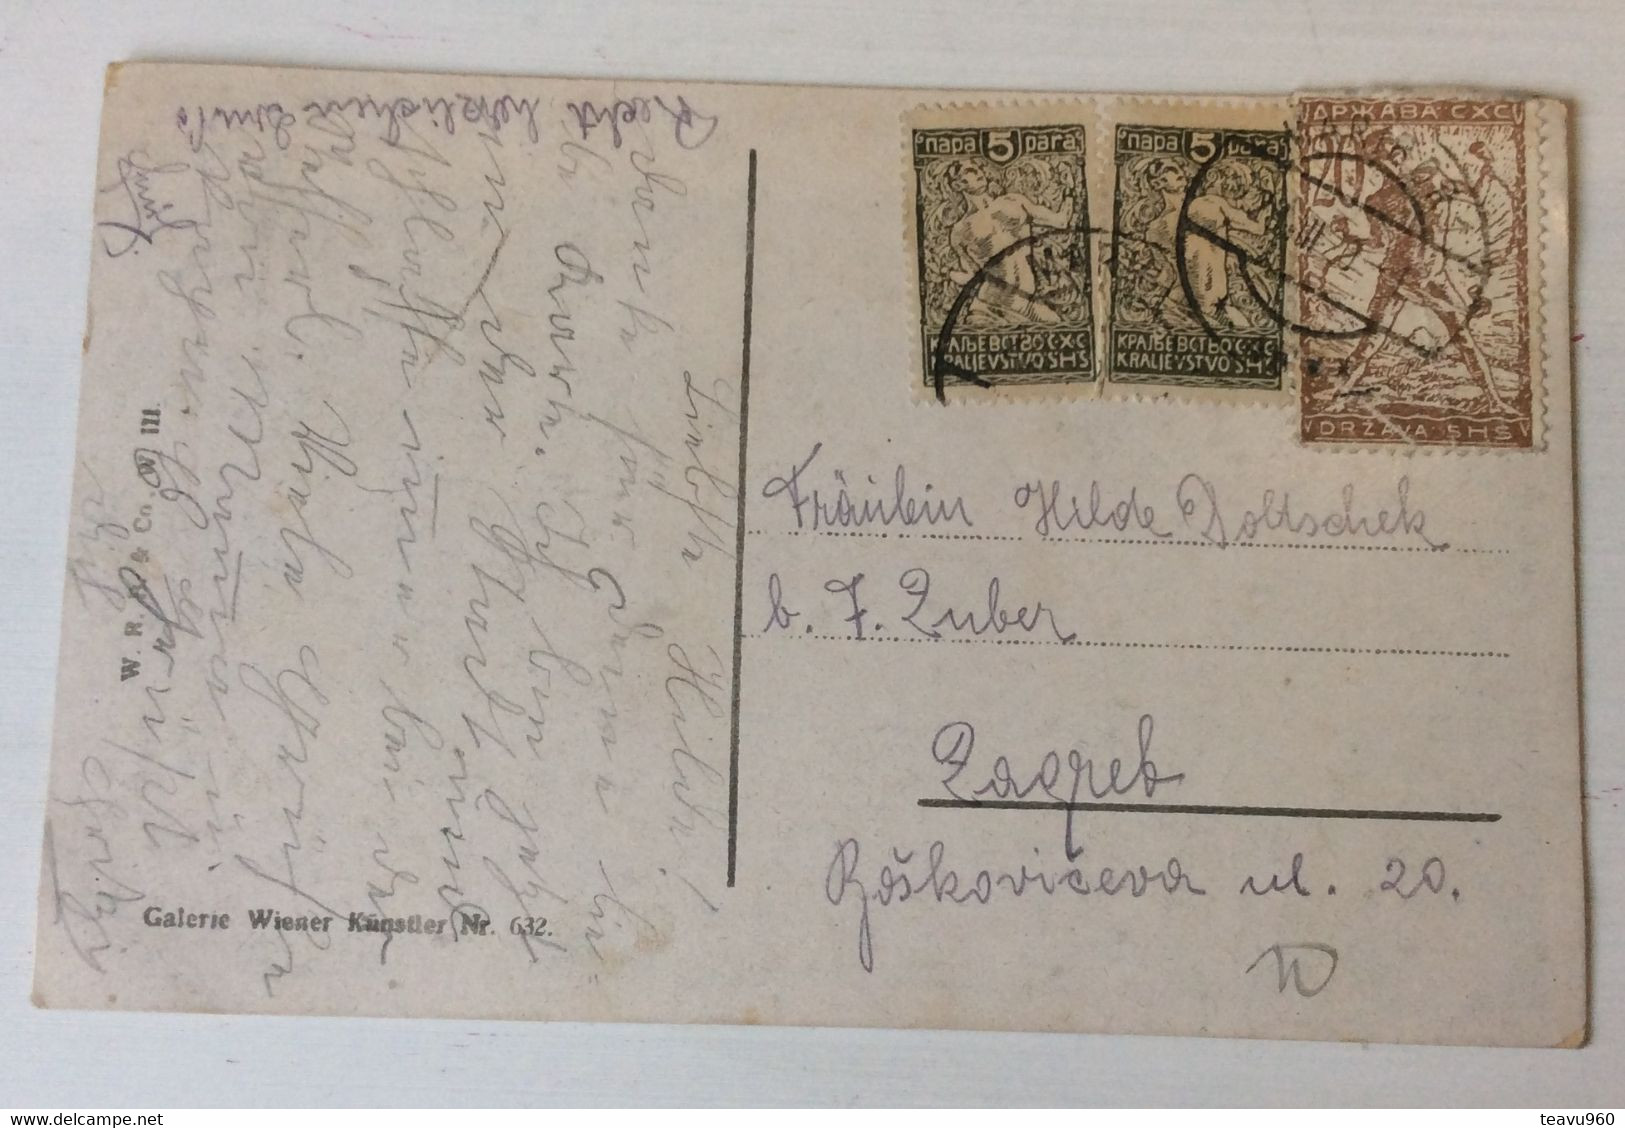 OLD POSTCARD Illustrators - Signed: Zatzka ,MÄDCHEN LADY DES MÄDCHENS KLAGE,GALERIE WISNER KÜ NSTLER  Nr.632. AK 1920 - Zatzka